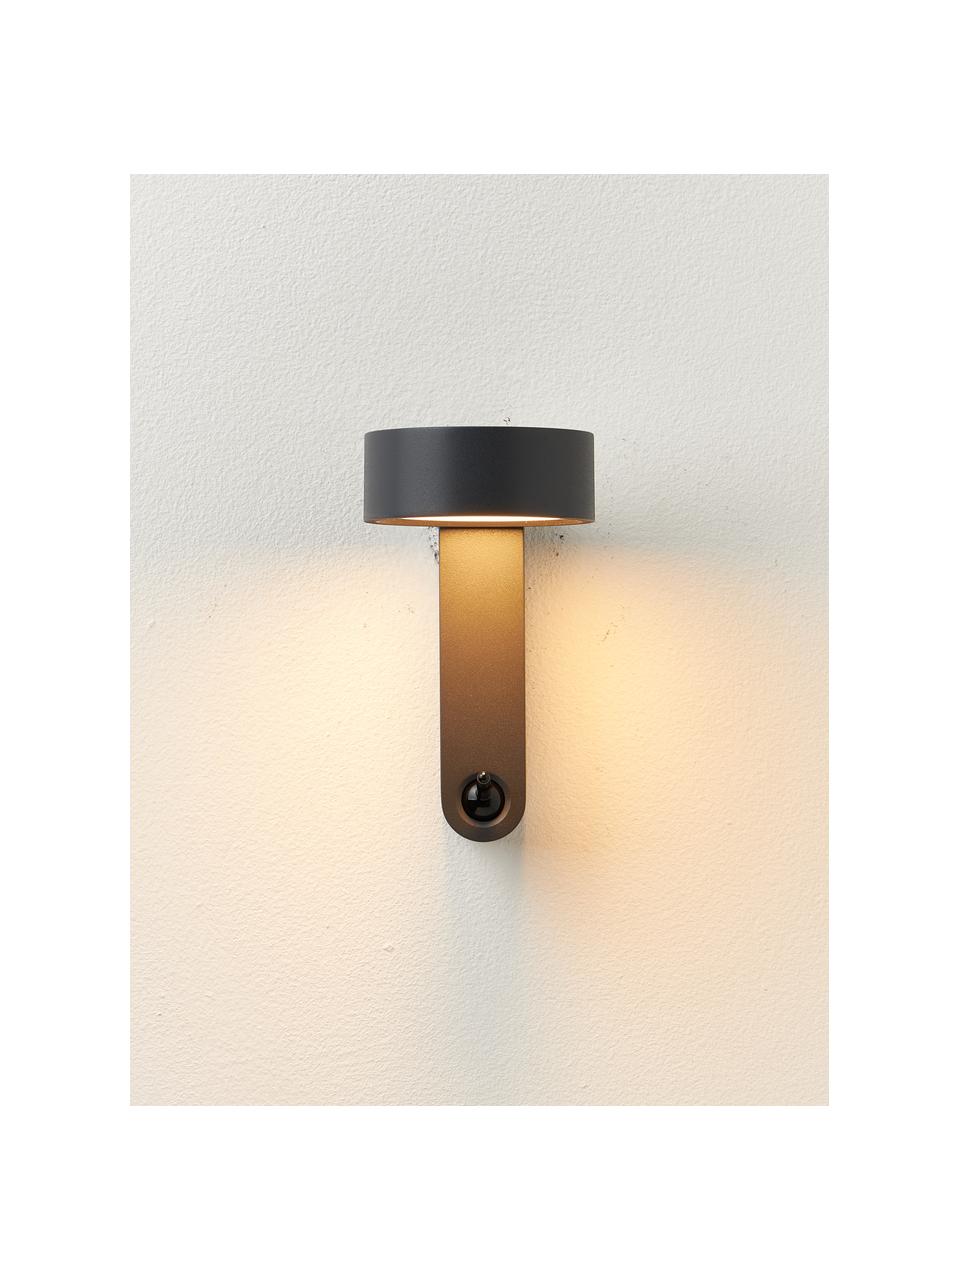 Kleine LED-Wandleuchte Toggle mit verstellbarem Lampenschirm, Aluminium, lackiert, Anthrazit, matt, B 10 x H 17 cm